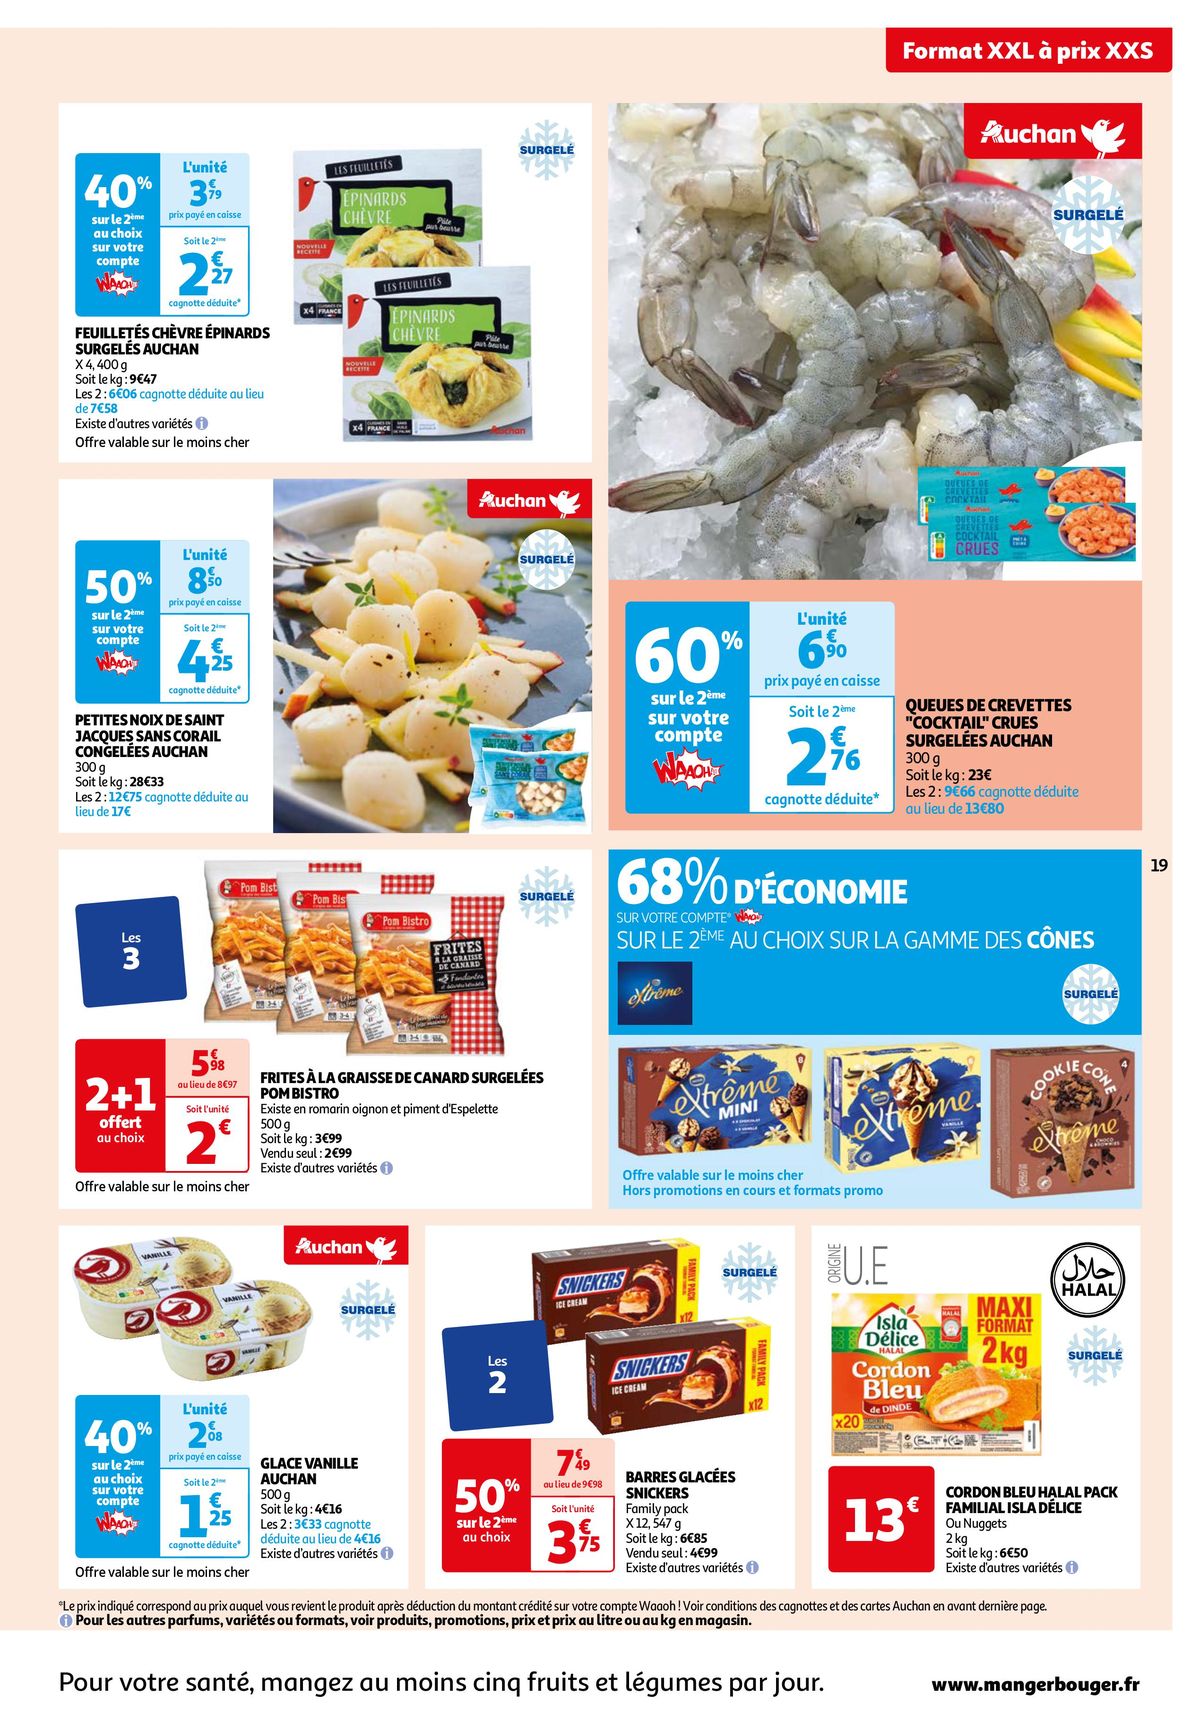 Catalogue 25 jours Auchan : à vos marques, prêts, promos !, page 00019